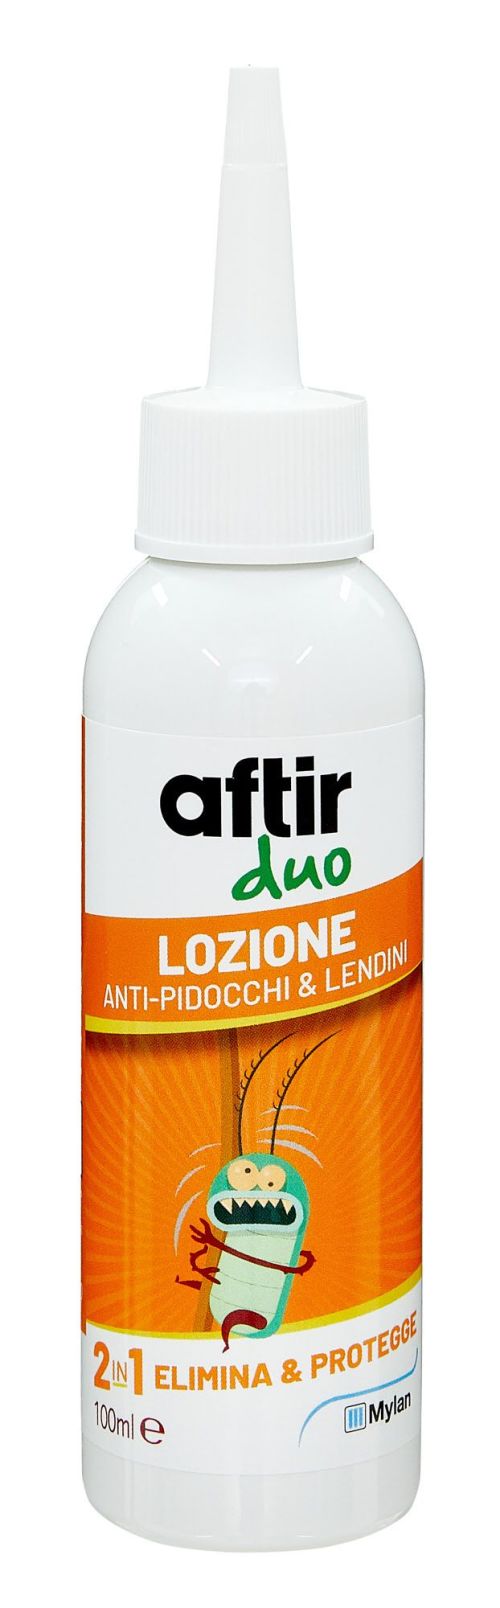 935559981 - Aftir Duo Lozione antipidocchi e lendini 100ml - 7867773_3.jpg